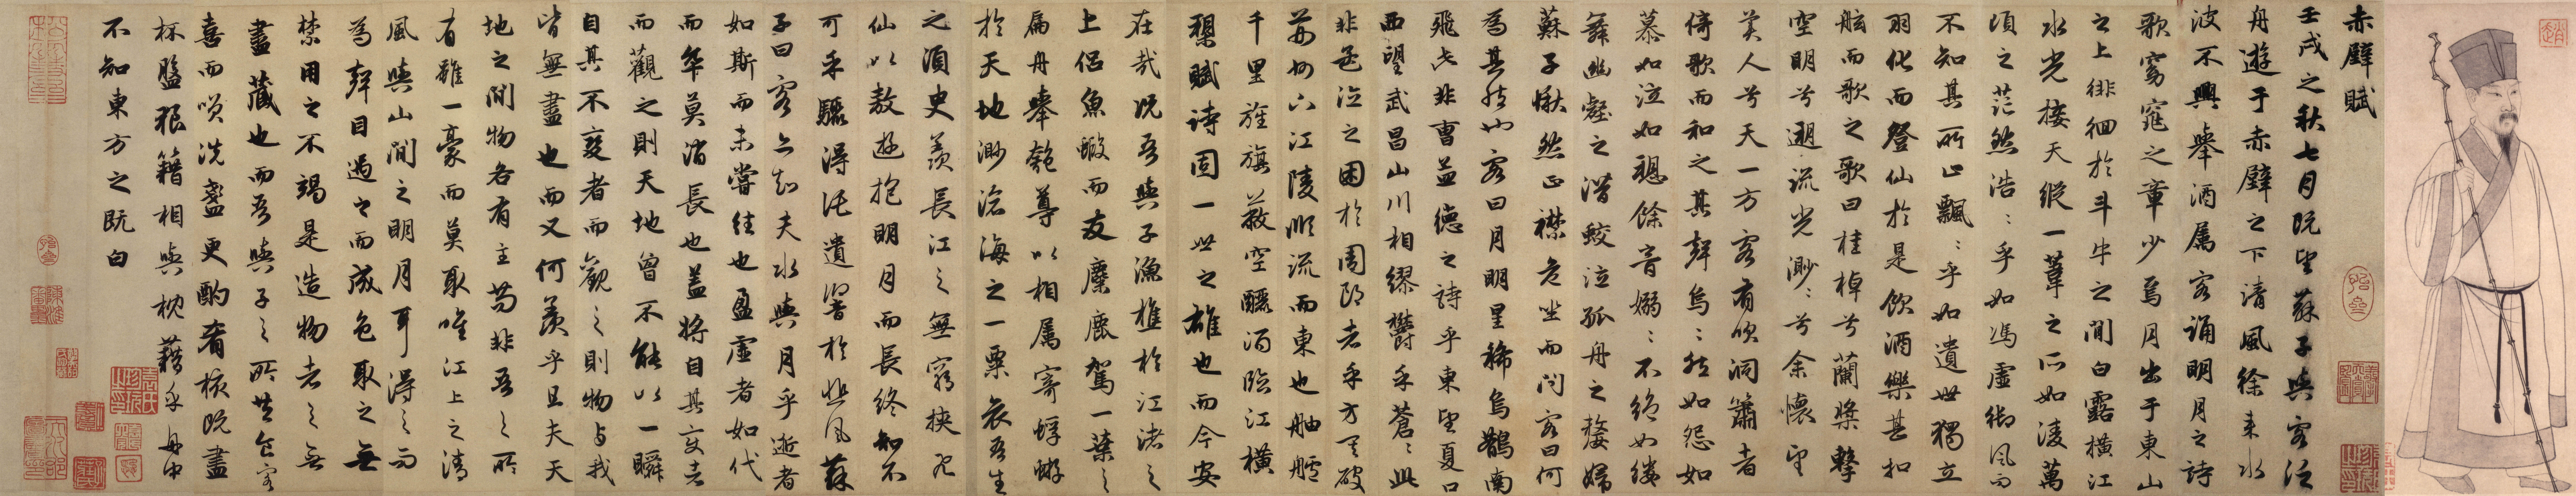 General 16872x3248 kanji text calligraphy Zhao Mengfu